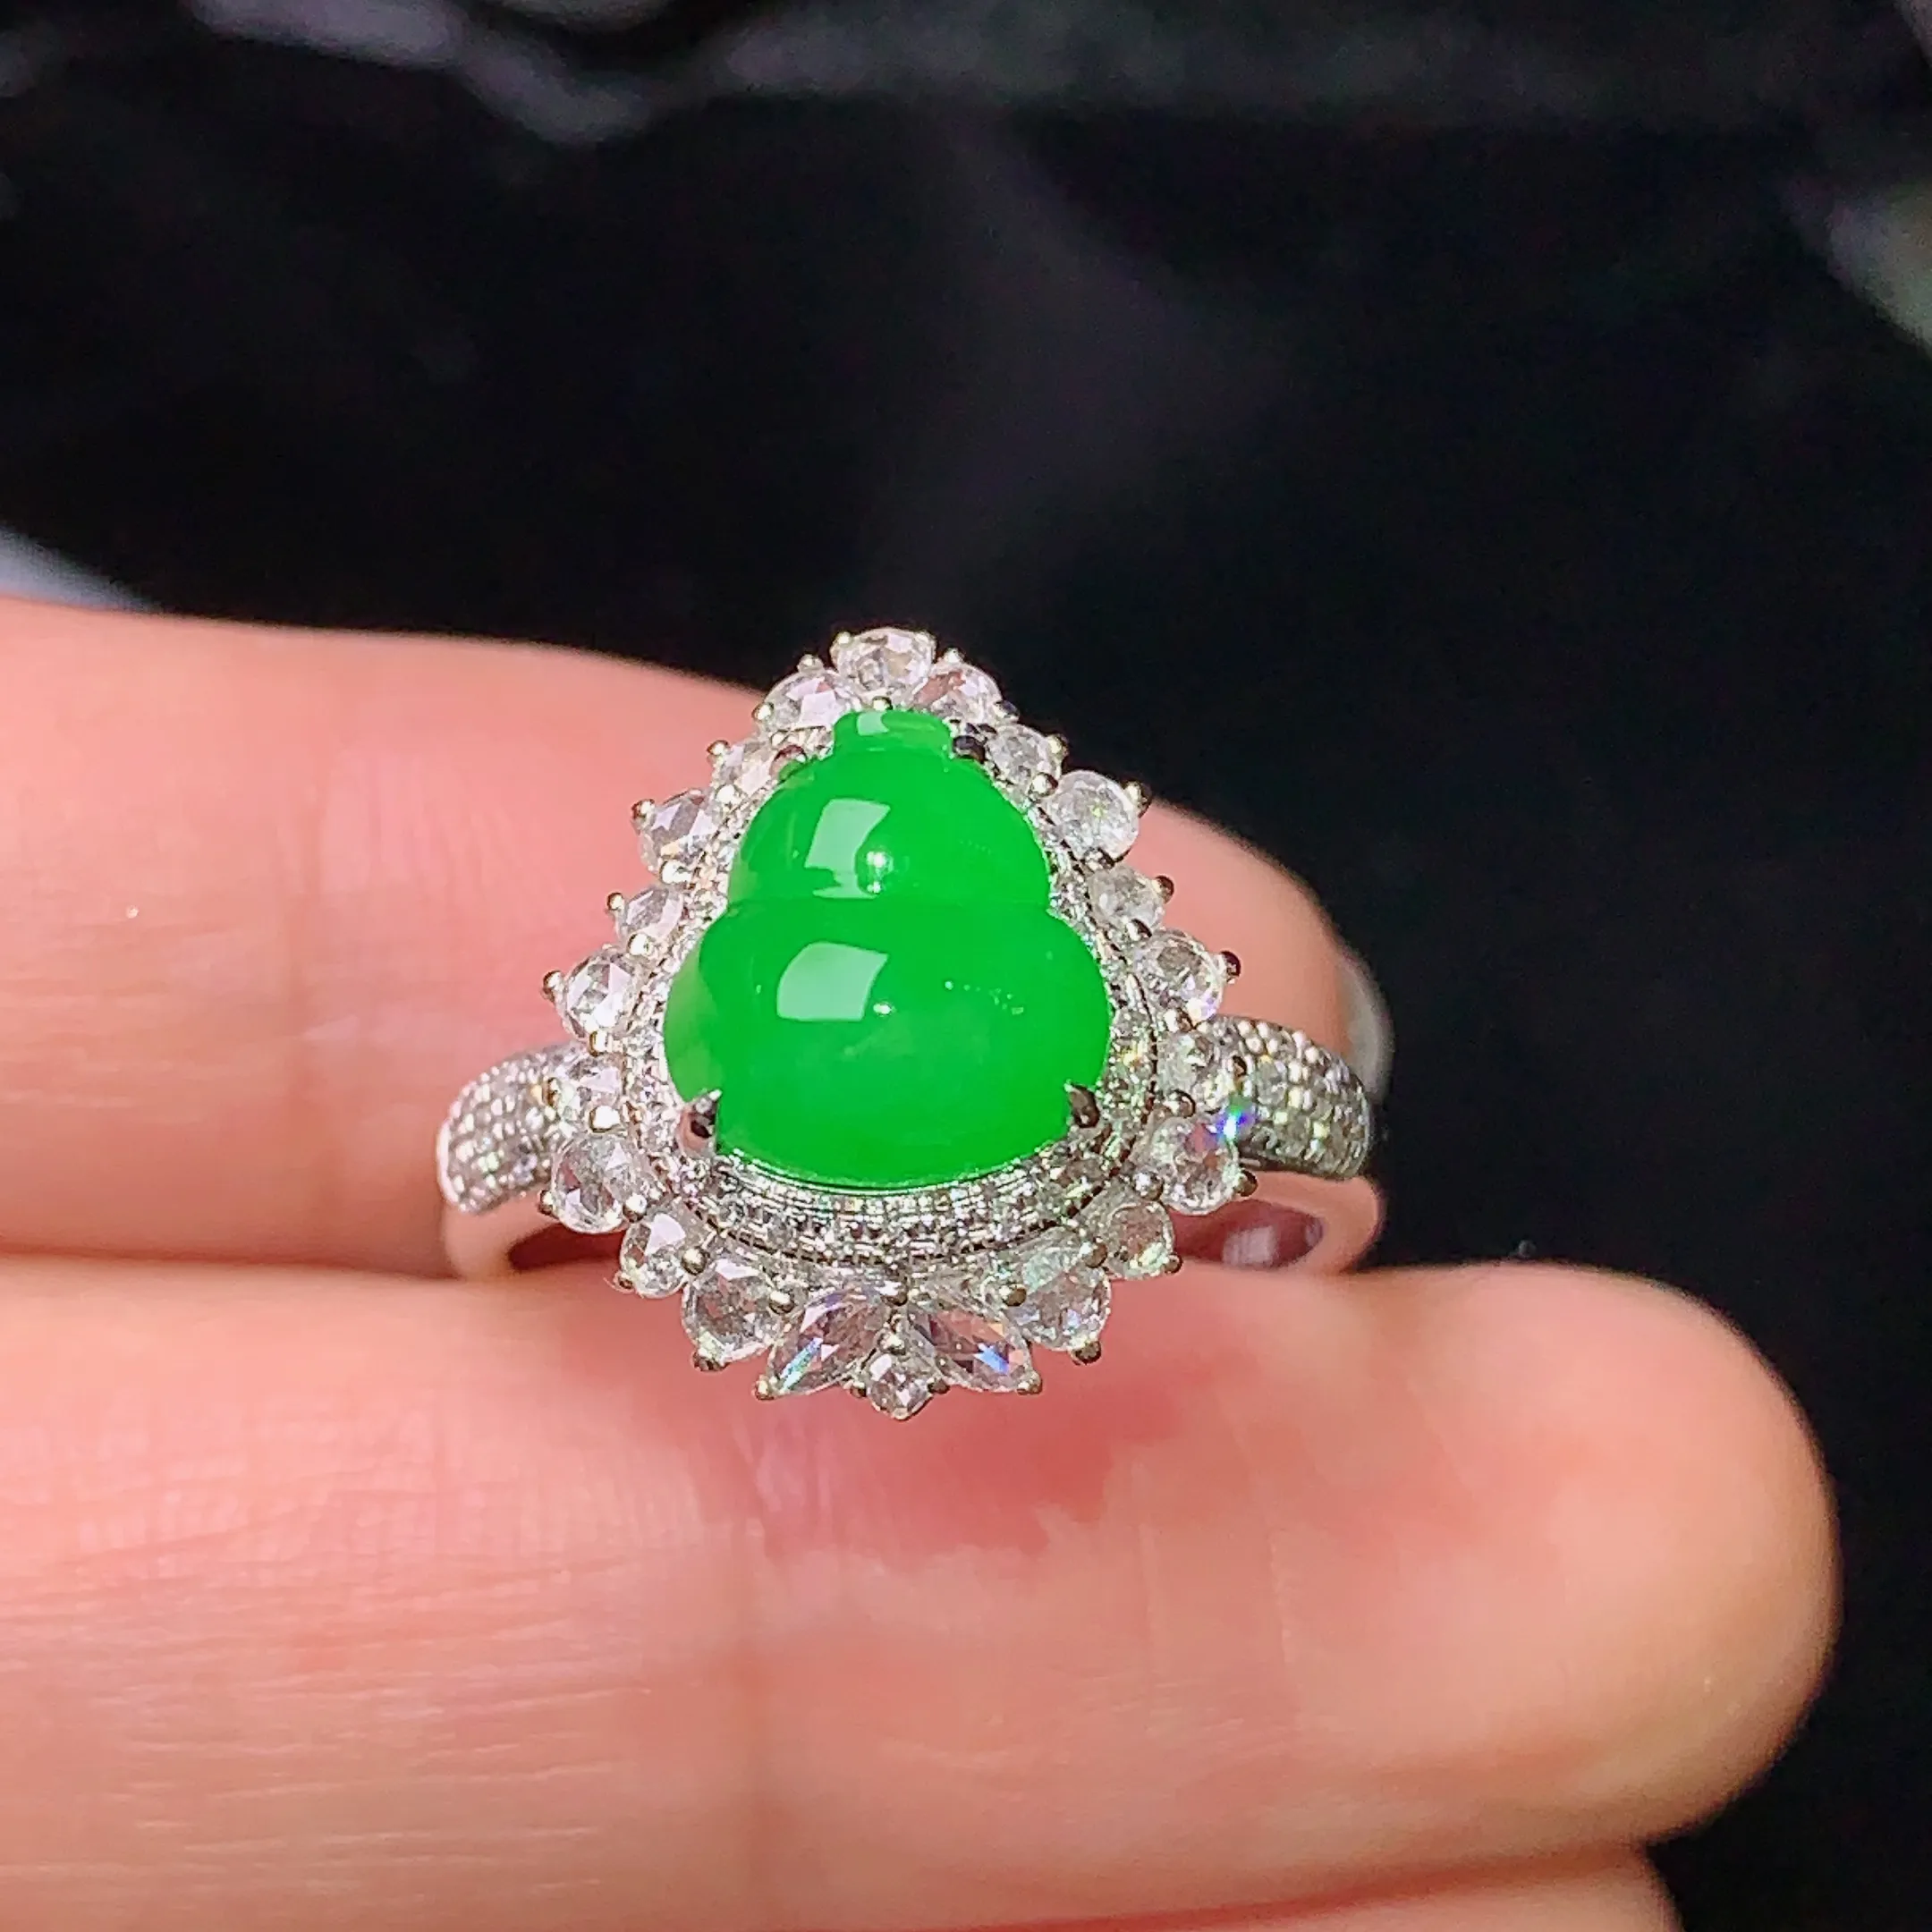 18k金钻镶嵌满绿葫芦戒指 玉质细腻 色泽艳丽 圈口14.5 整体尺寸15.5*13.5*11.7